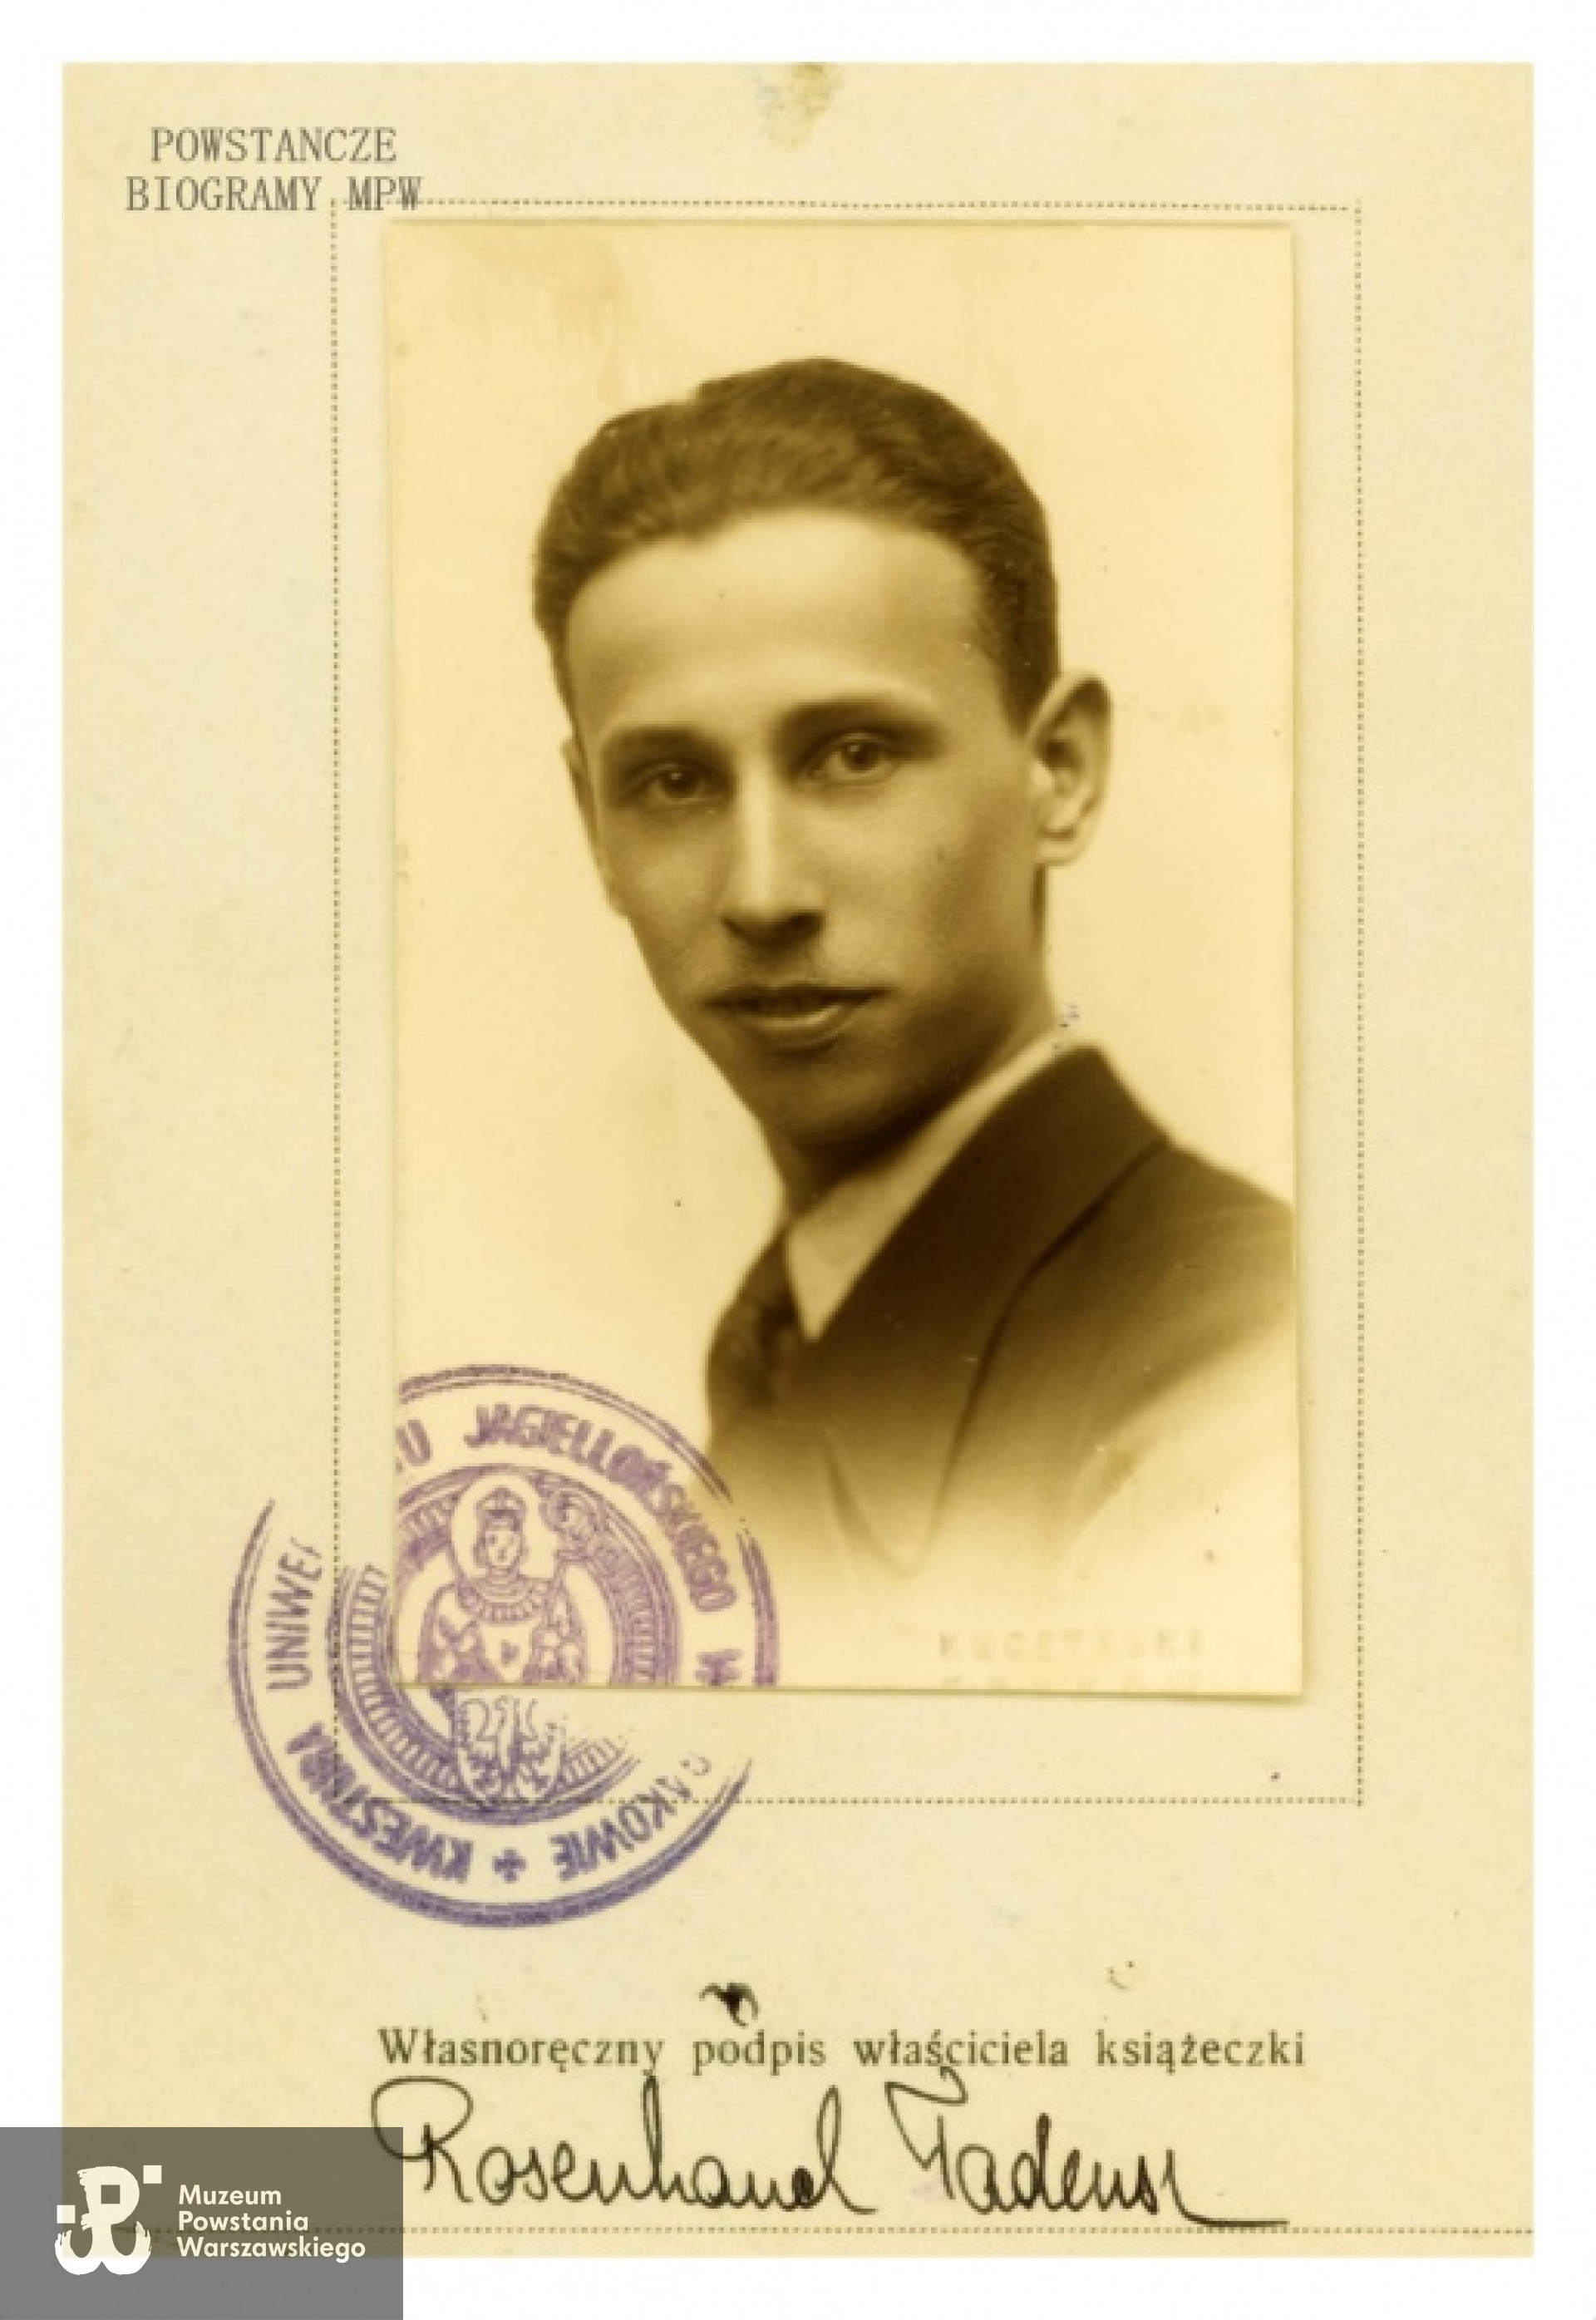 Tadeusz Rosenhauch "Edward". Fot. wykonane w 1937 roku. Archiwum rodzinne